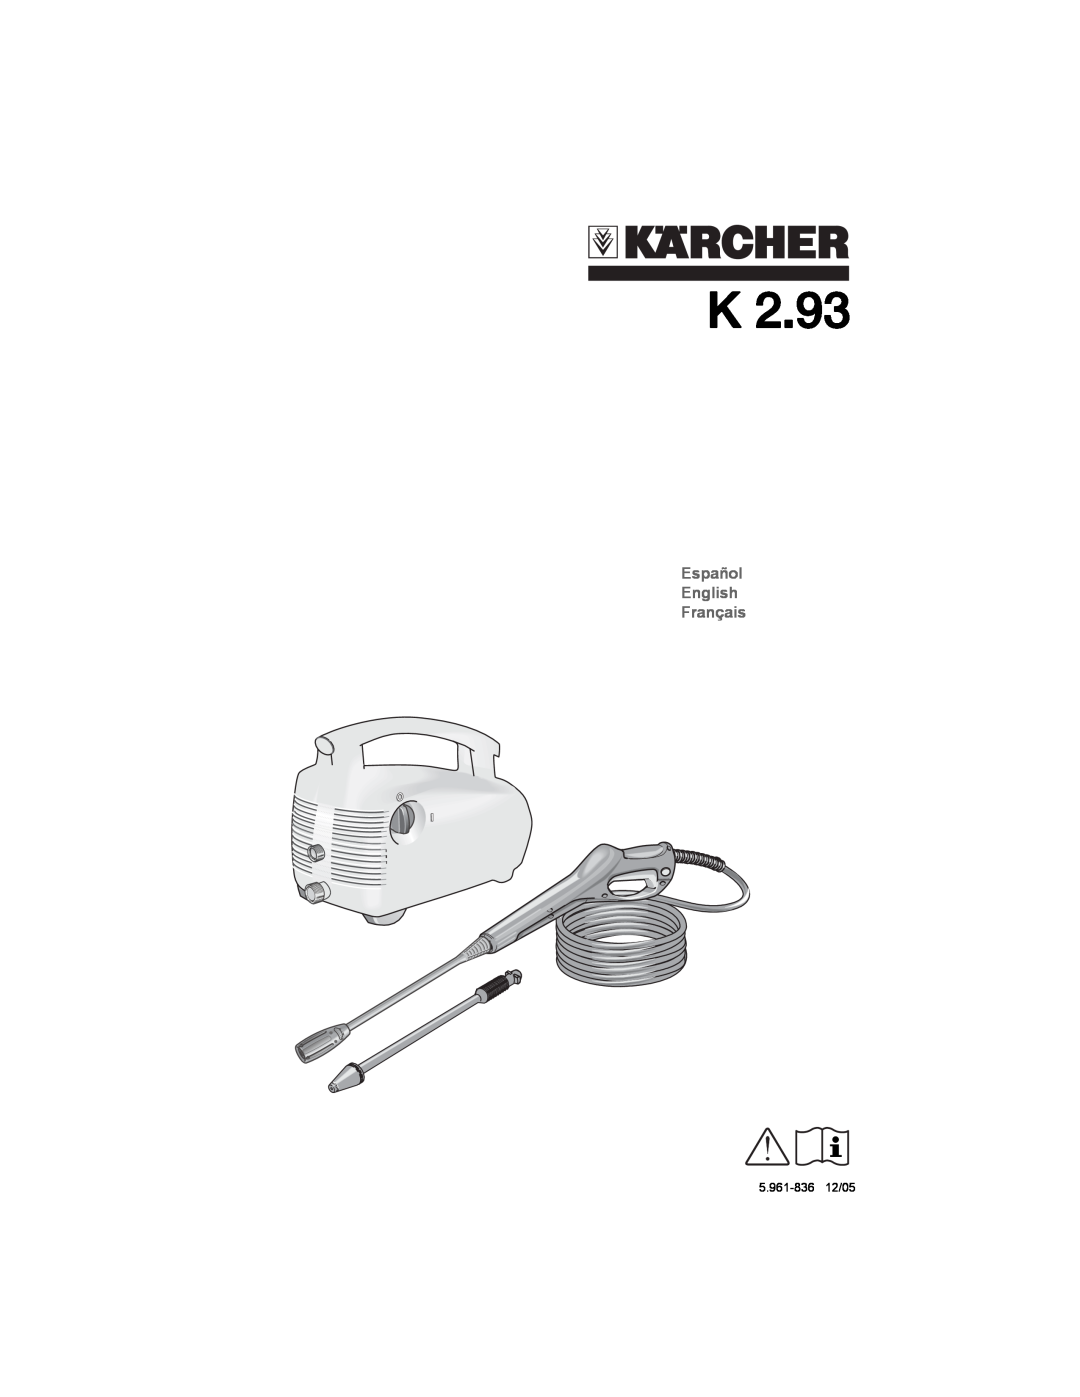 Karcher K2.93 manual Español English Français, 5.961-83612/05 